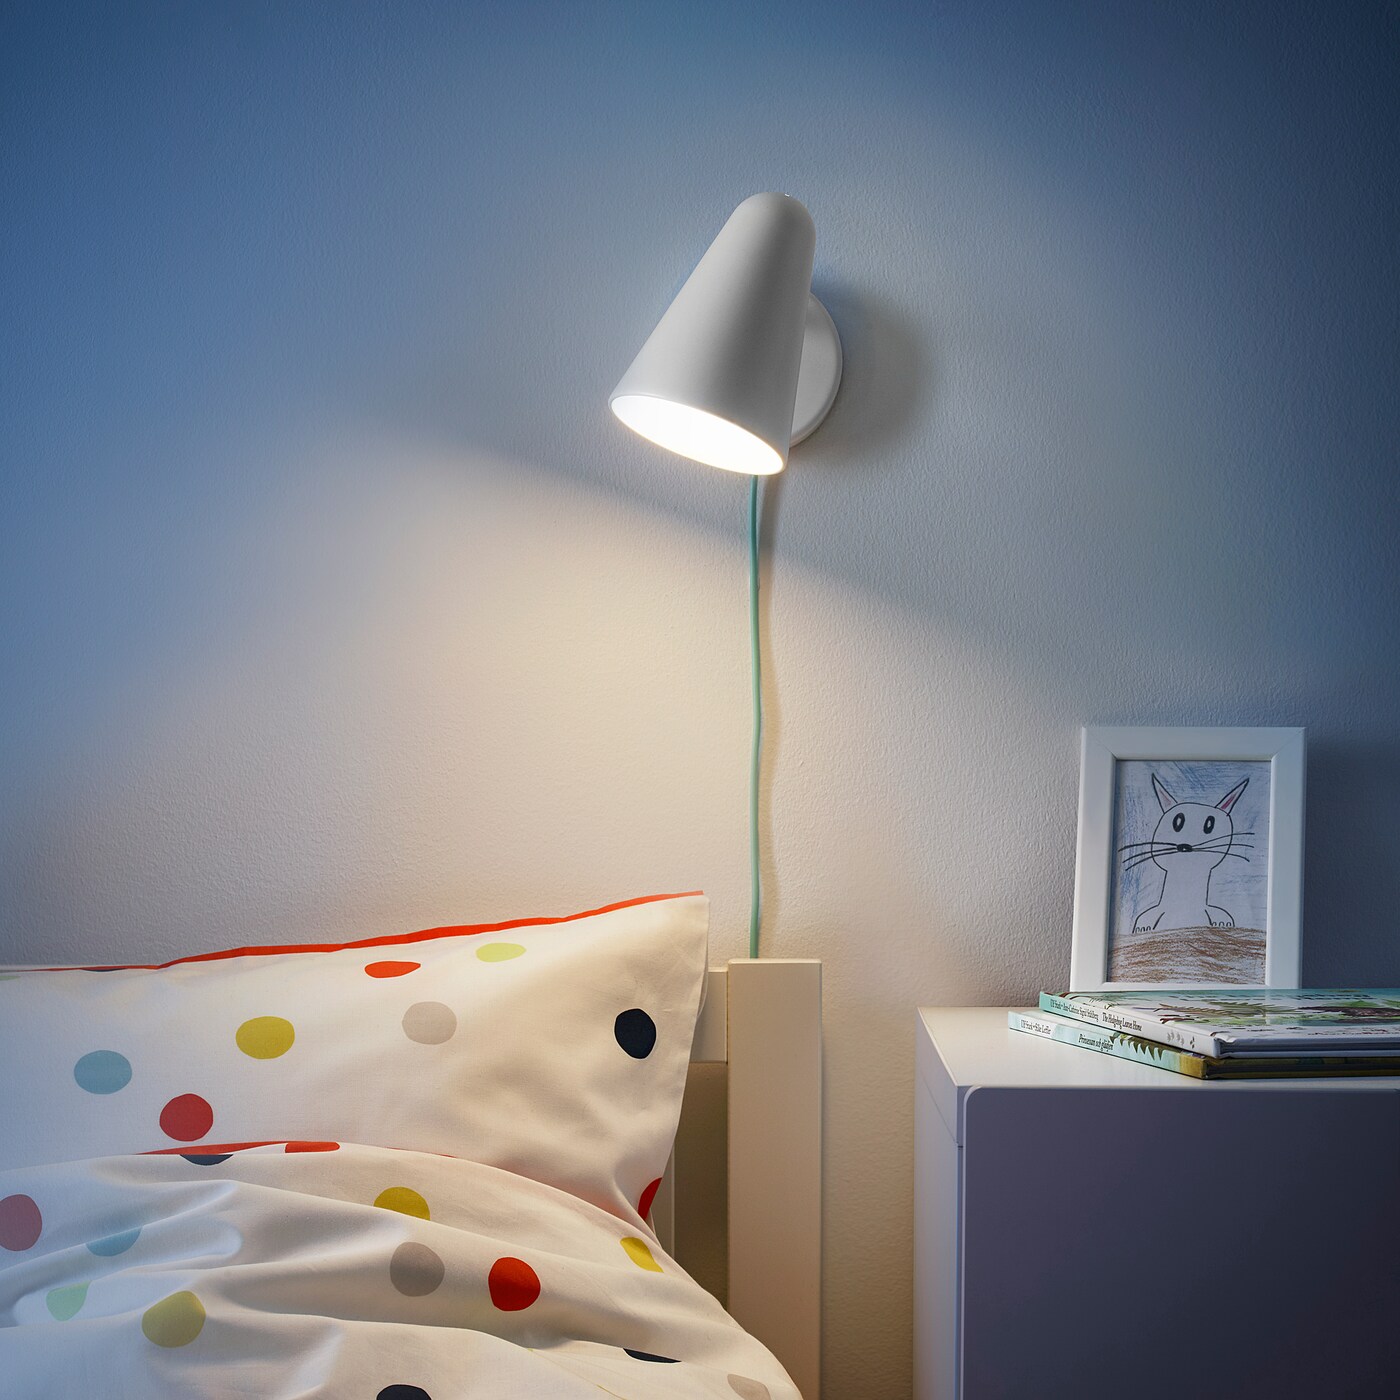 Организация освещения в детских комнатах: светильники и подсветка